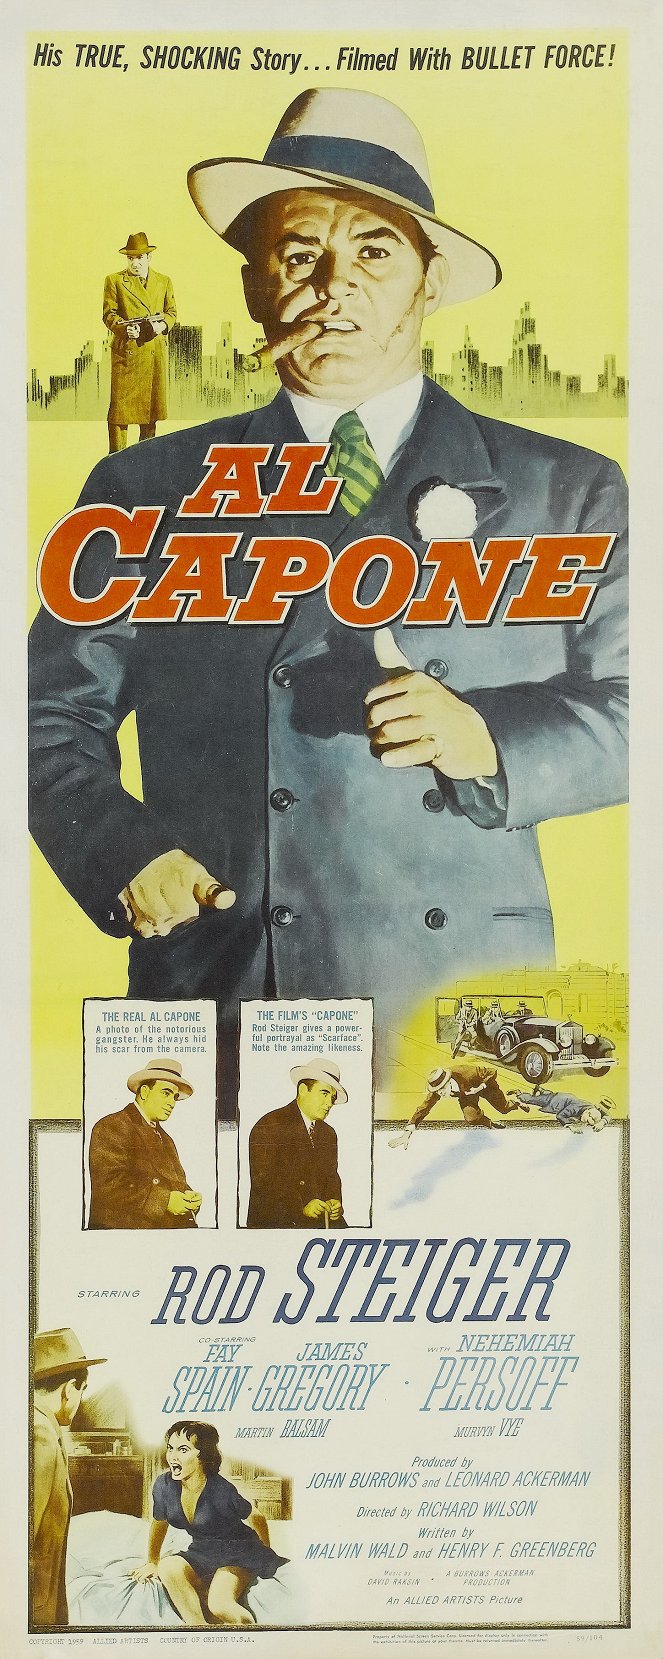 Al Capone - lain ja oikeuden voitto - Julisteet